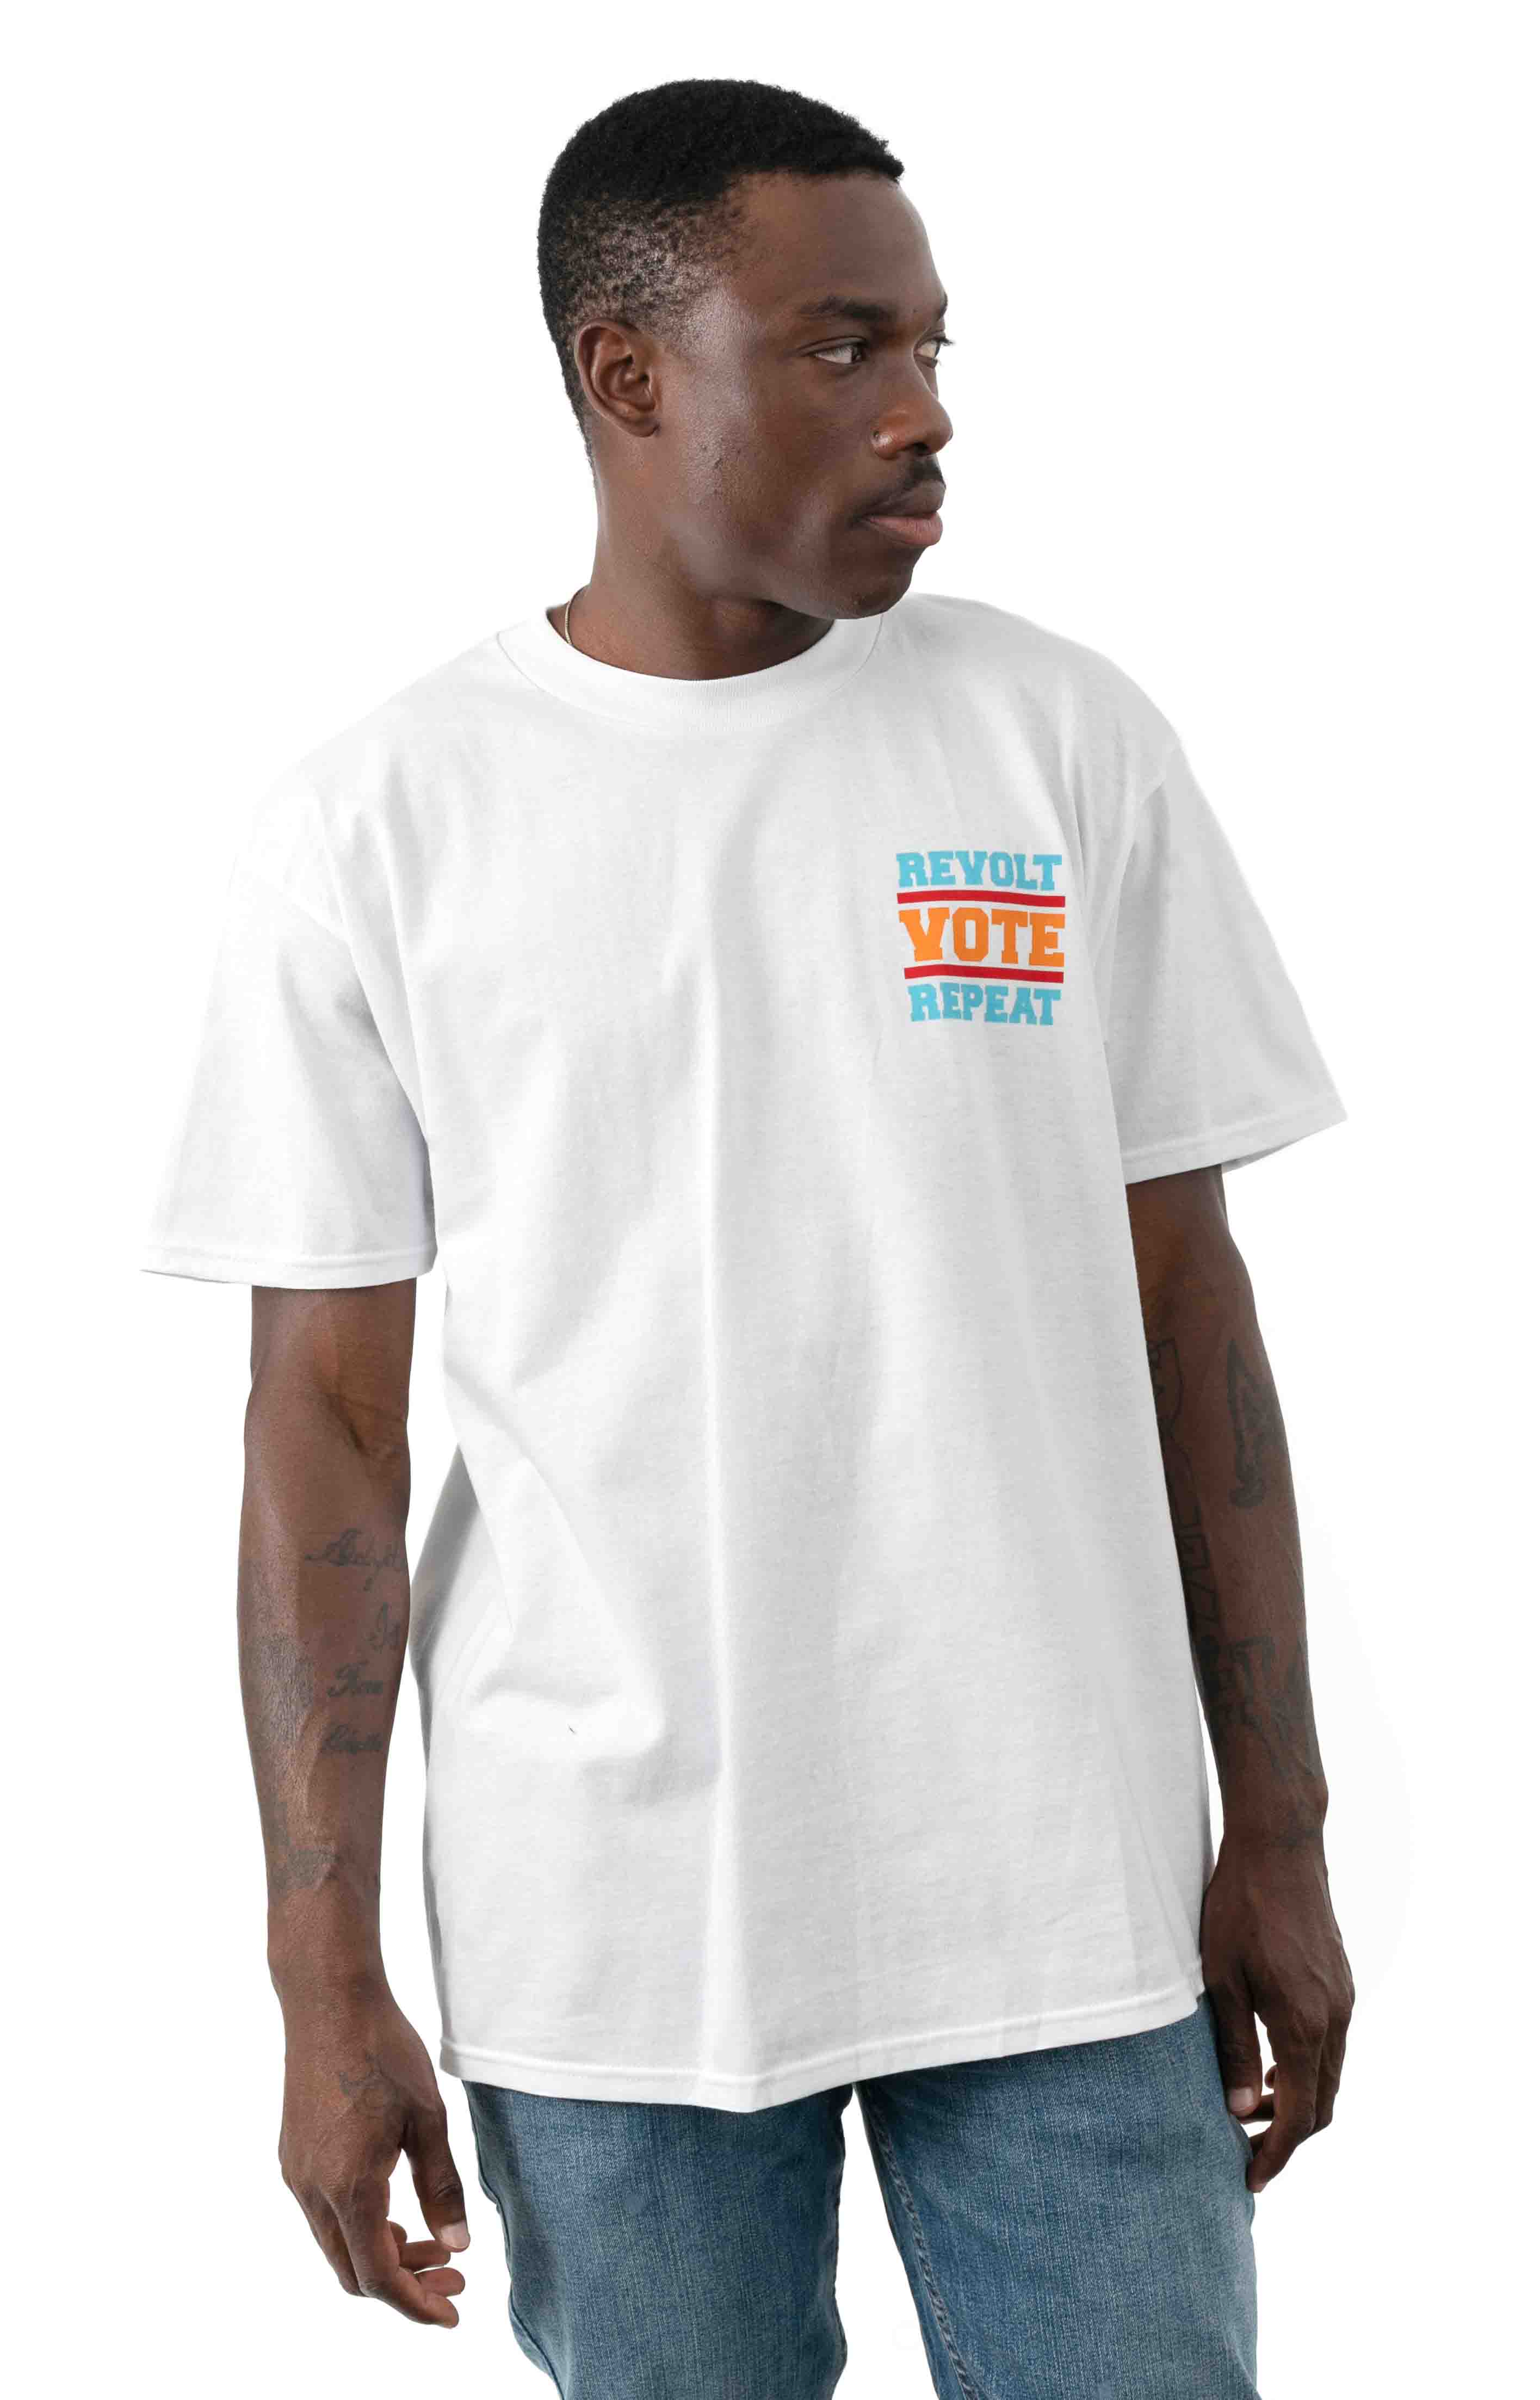 Revolt Vote Repeat T-Shirt - White